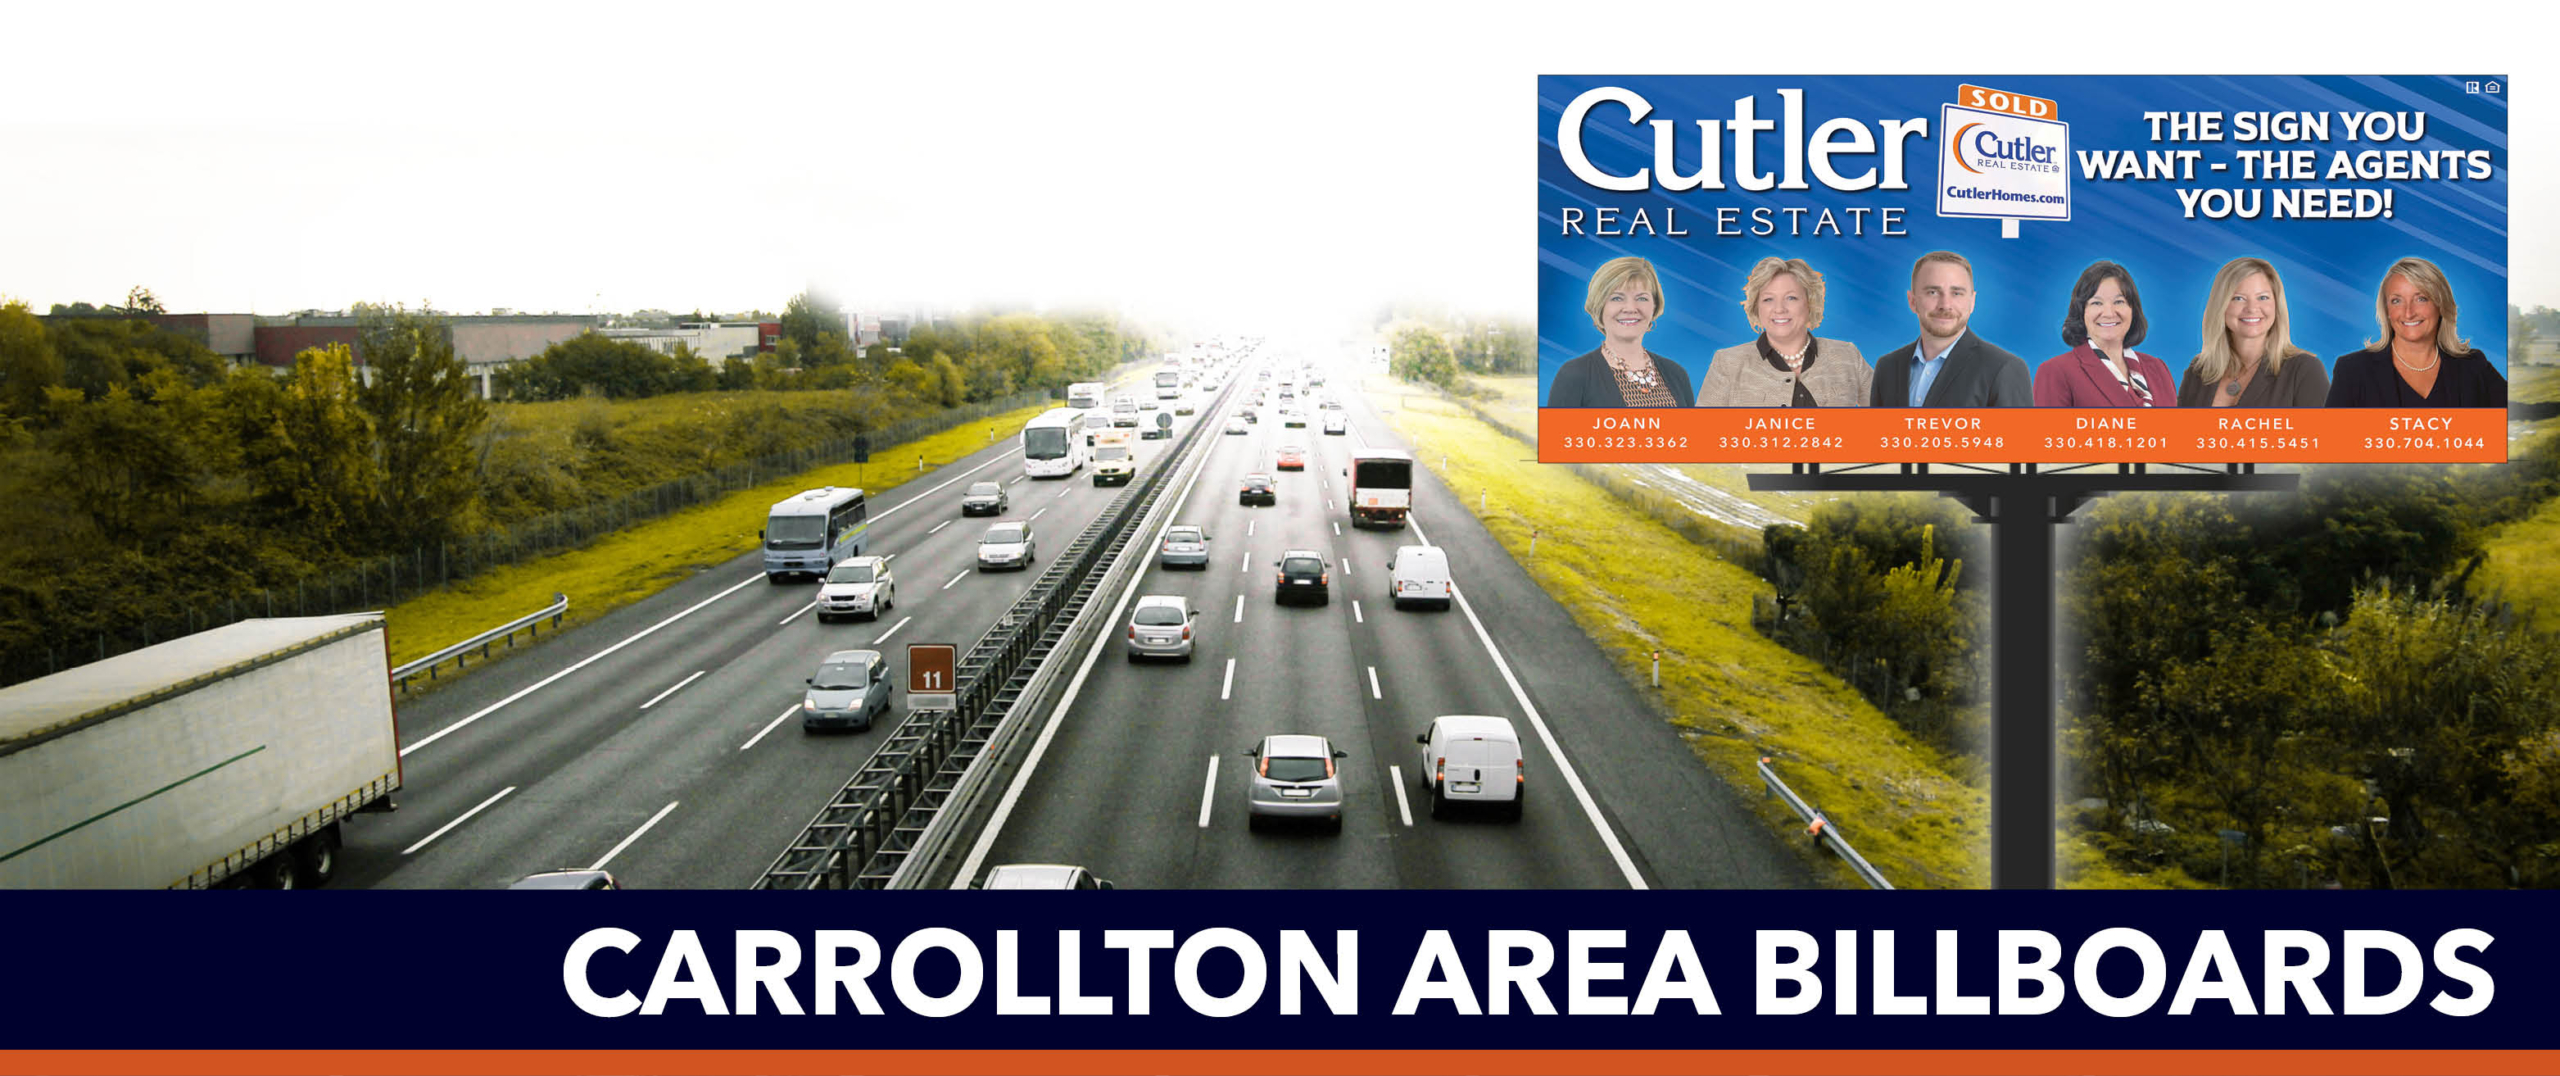 Carrollton area billboards